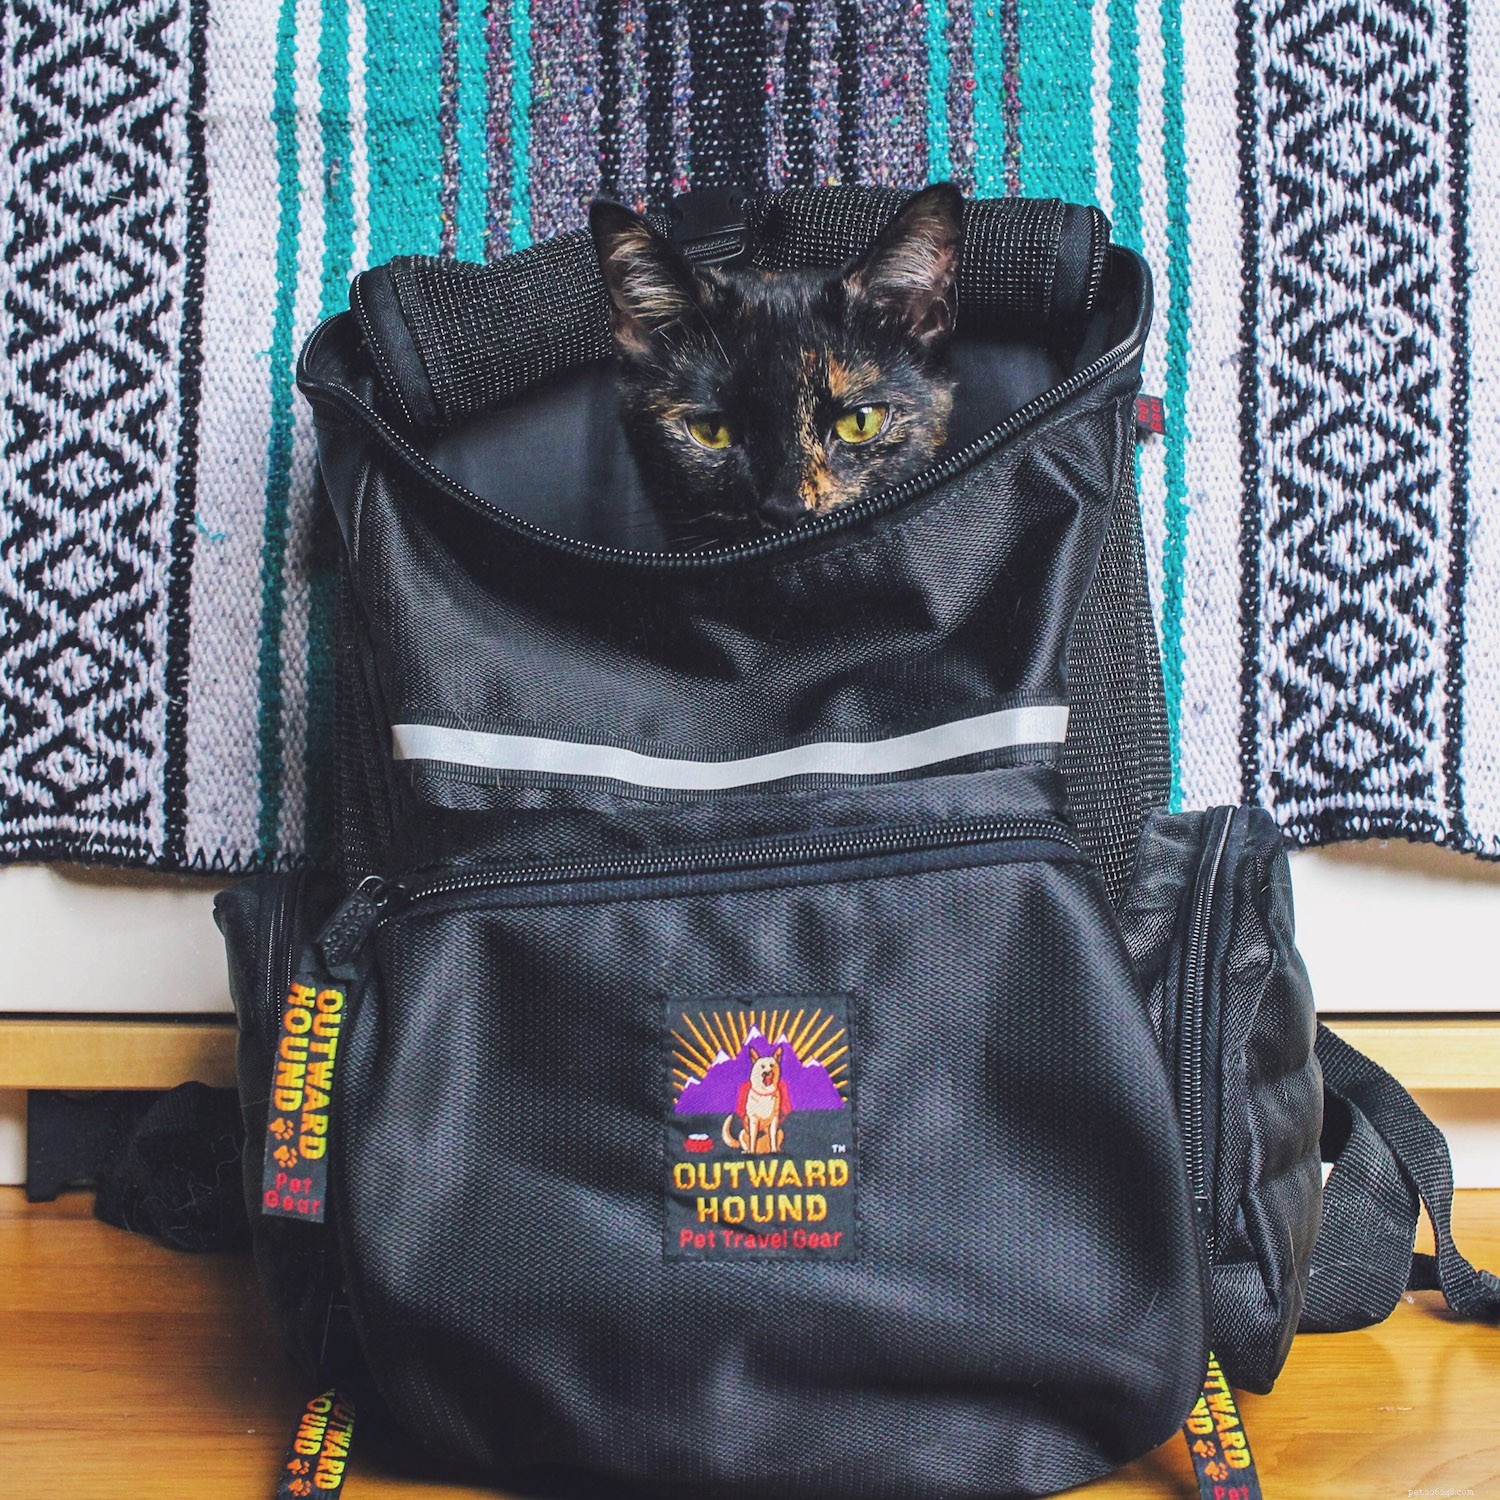 Le meilleur sac à dos pour chat pour emmener votre chat en balade